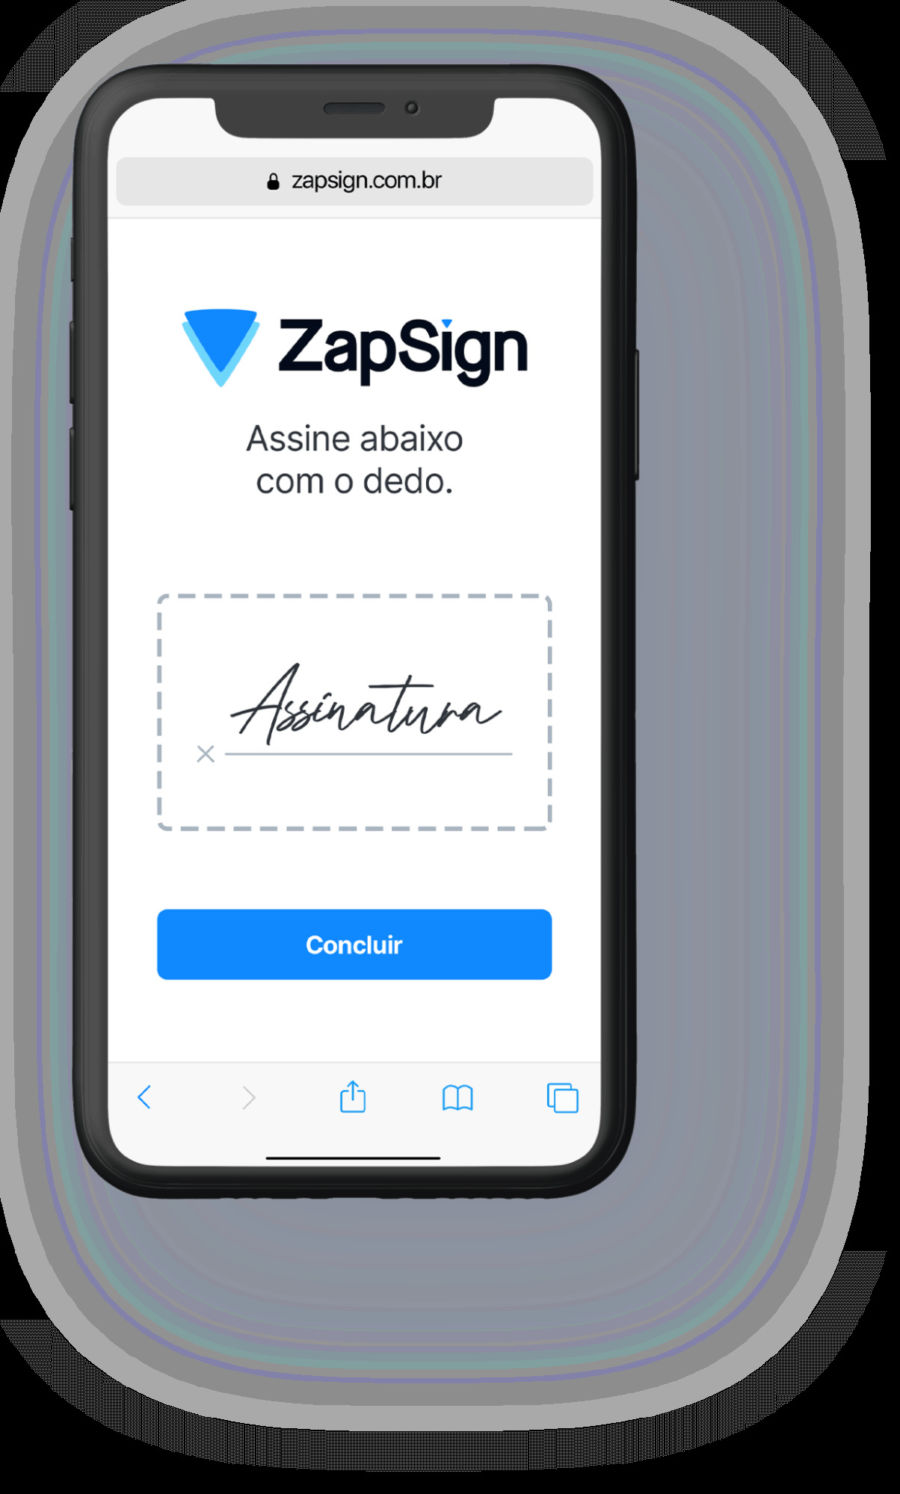 Imagem de um celular com o aplicativo ZapSign e uma assinatura